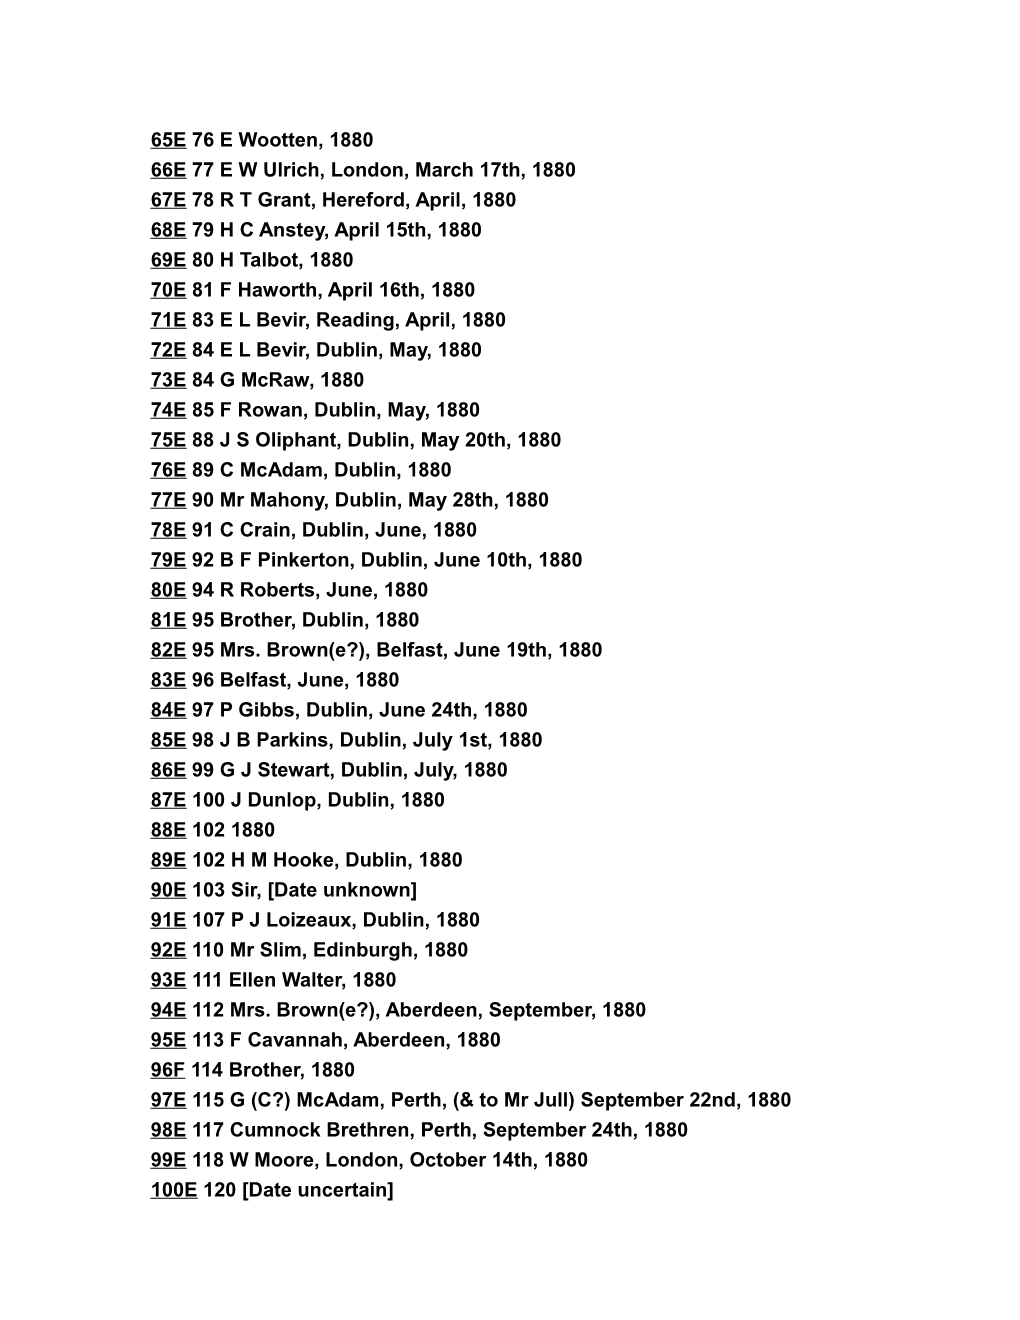 The Correspondents of J.N.D. 1800 1882 (Vol.3-1)